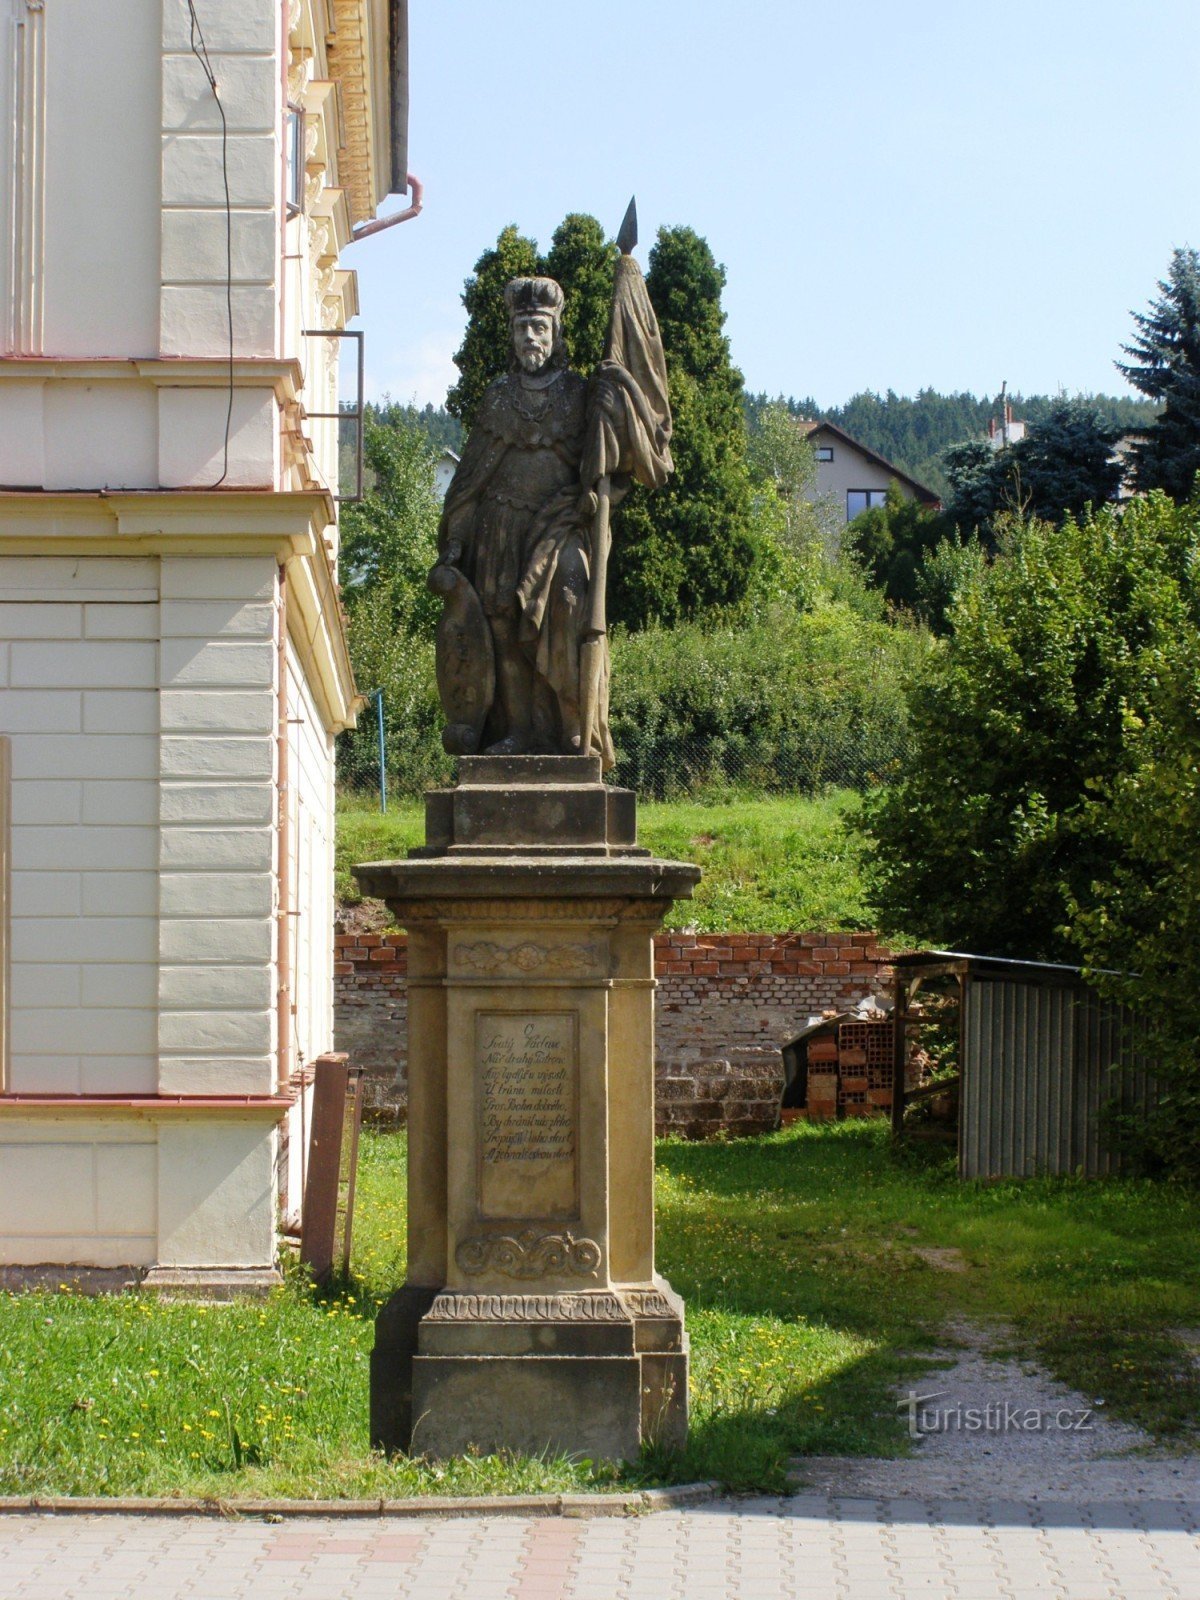 Stará Paka - estatuas de St. Ludmila y Sta. Wenceslao